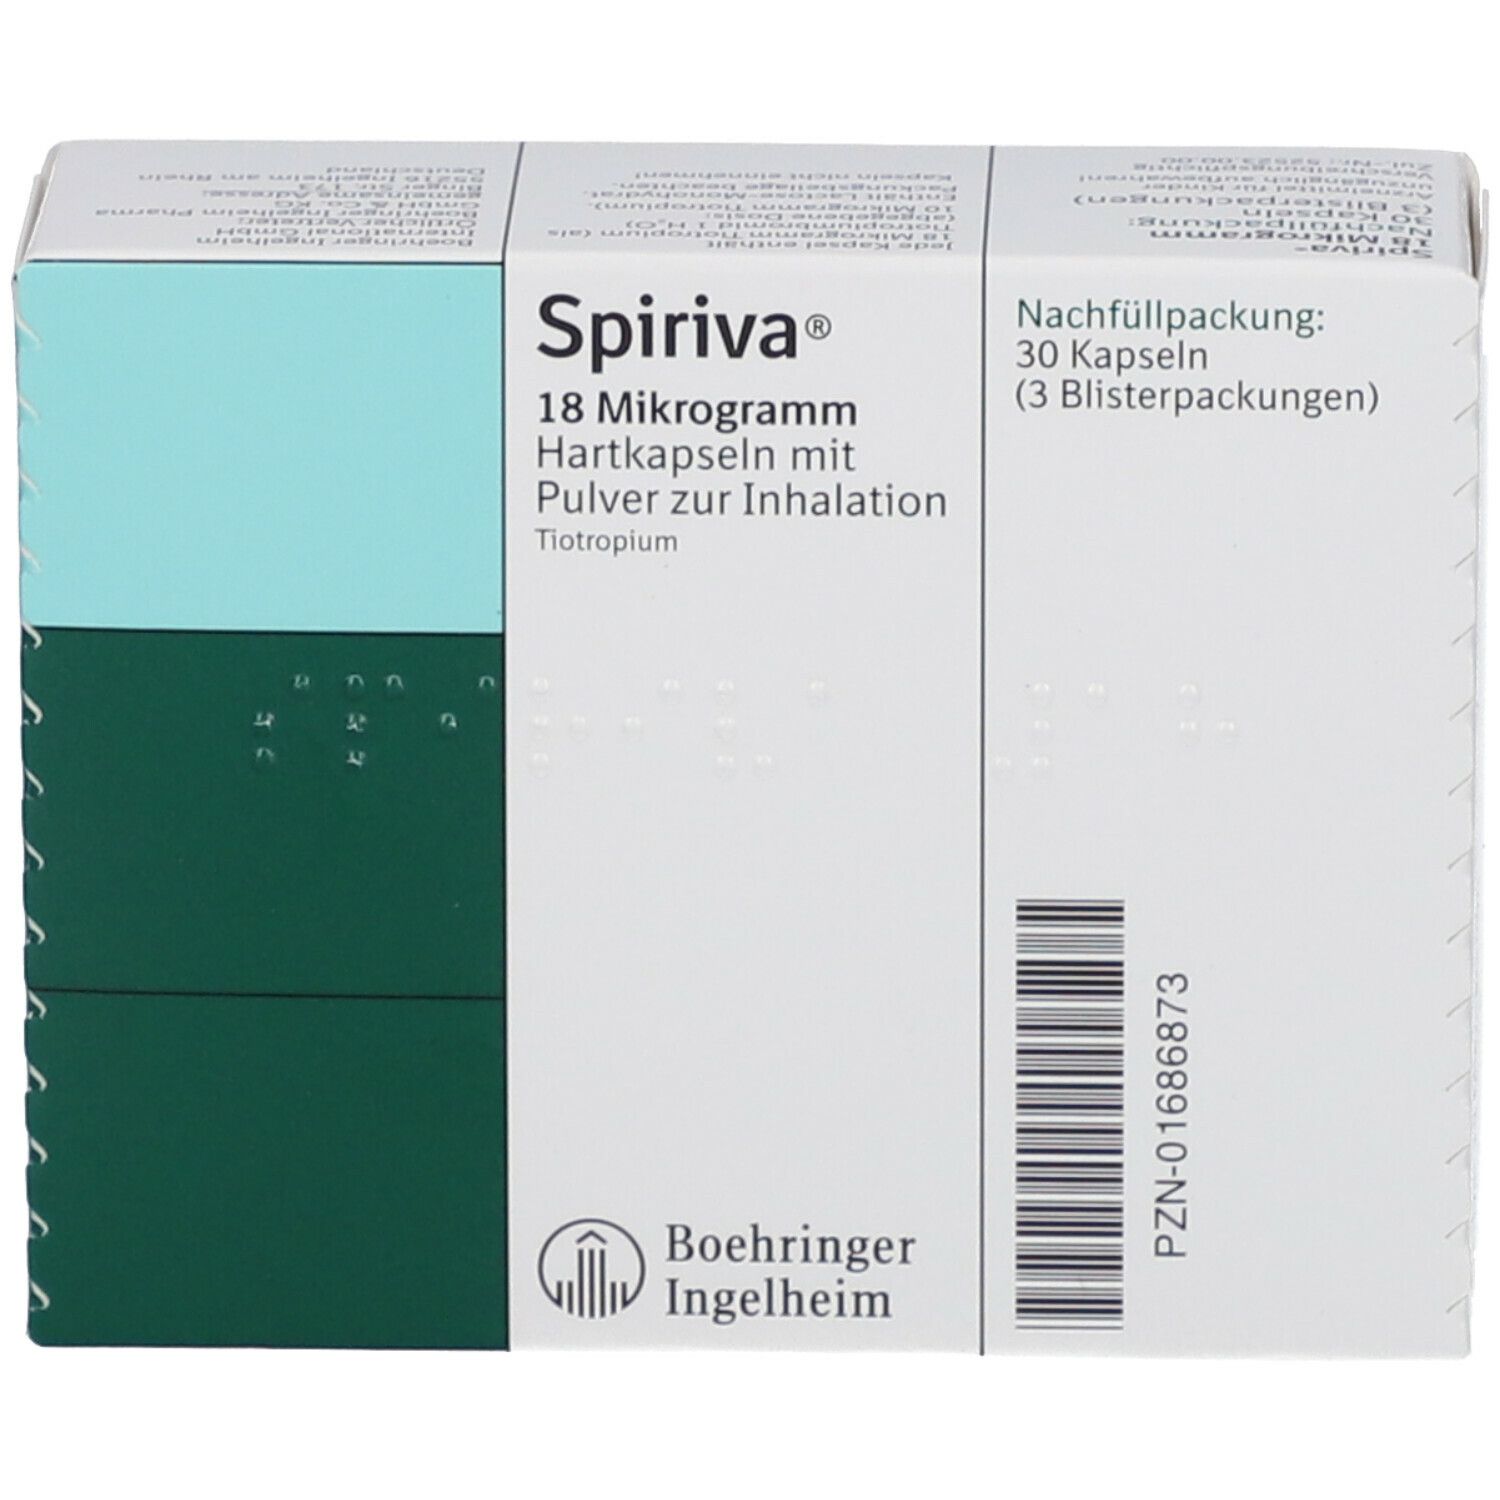 Spiriva® 18 µg Nachfüllpackung